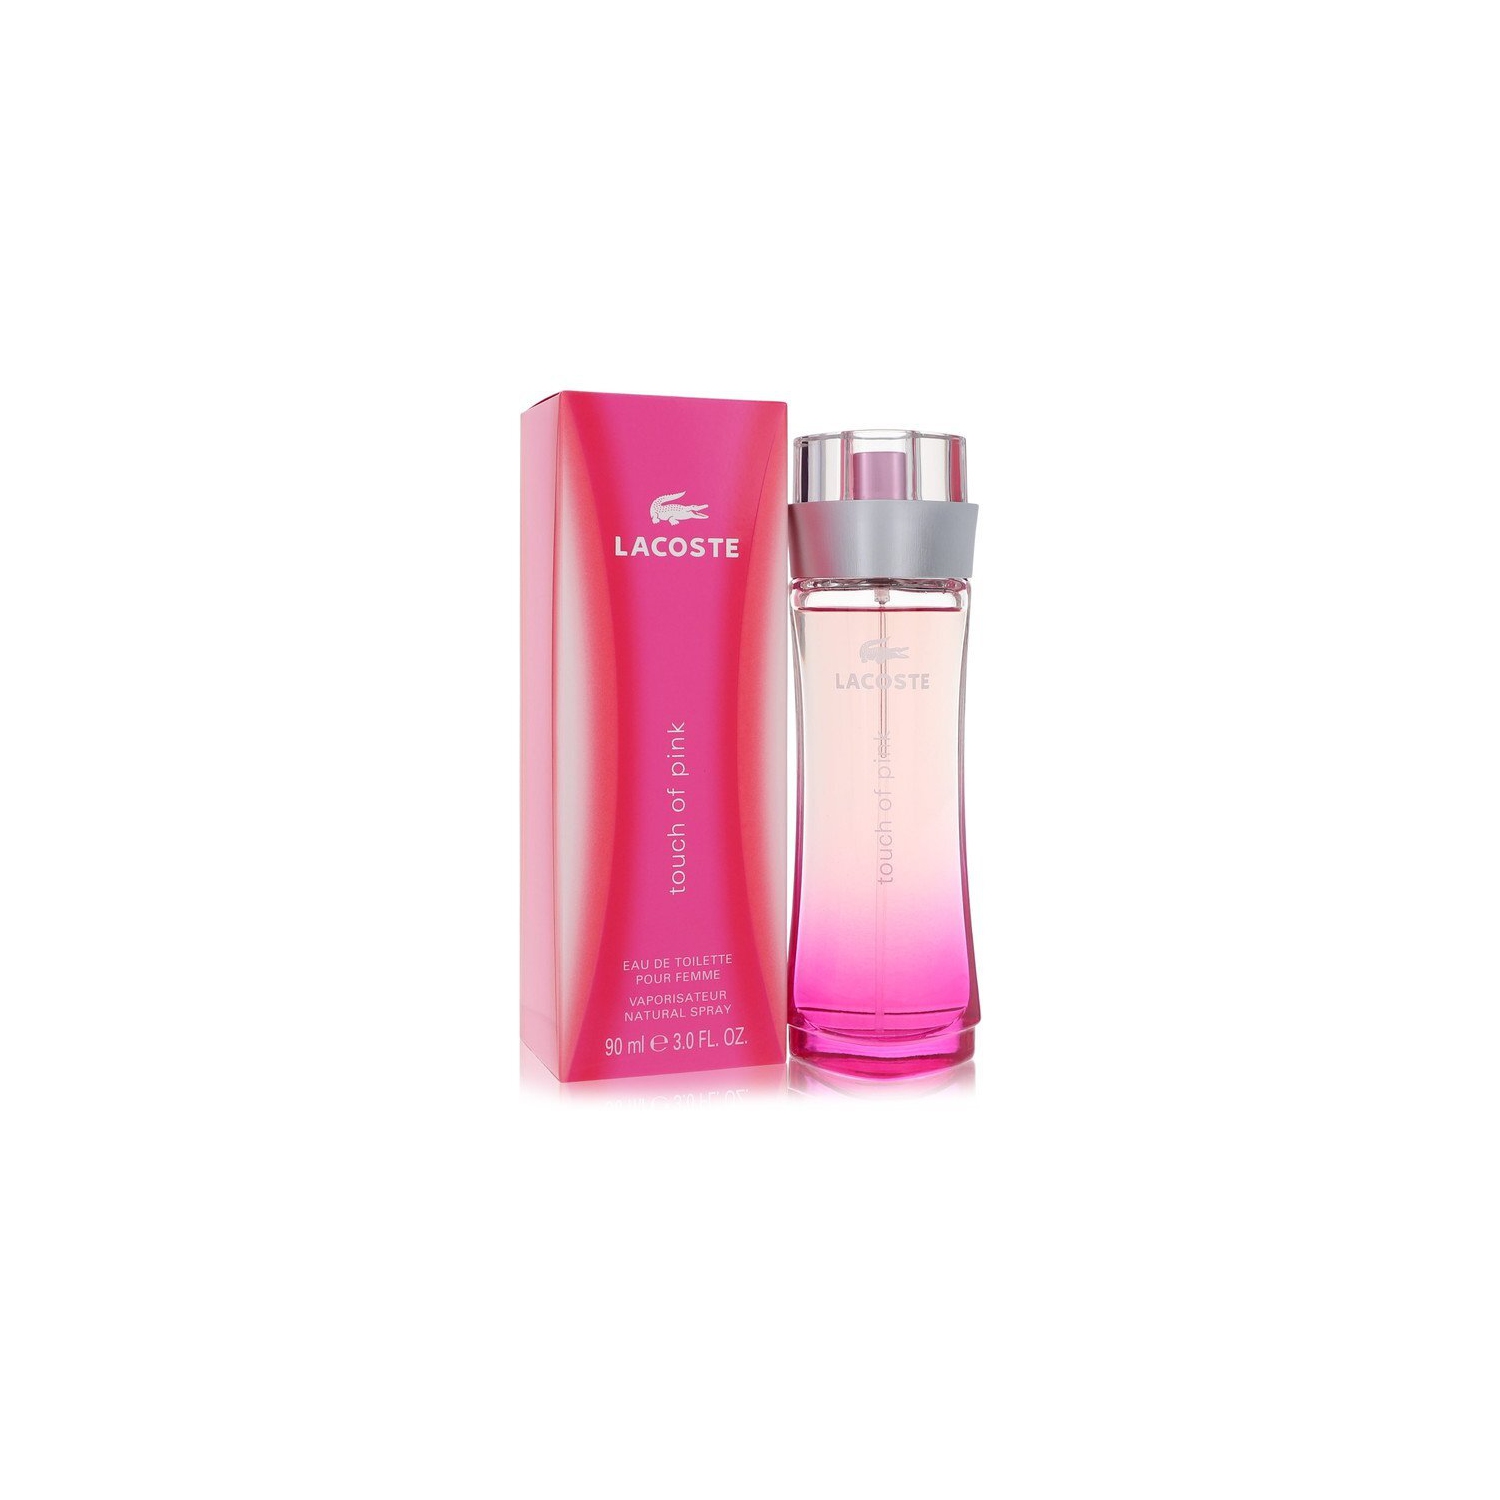 Touch of Pink by Lacoste Eau De Toilette Spray 3 oz (Women)